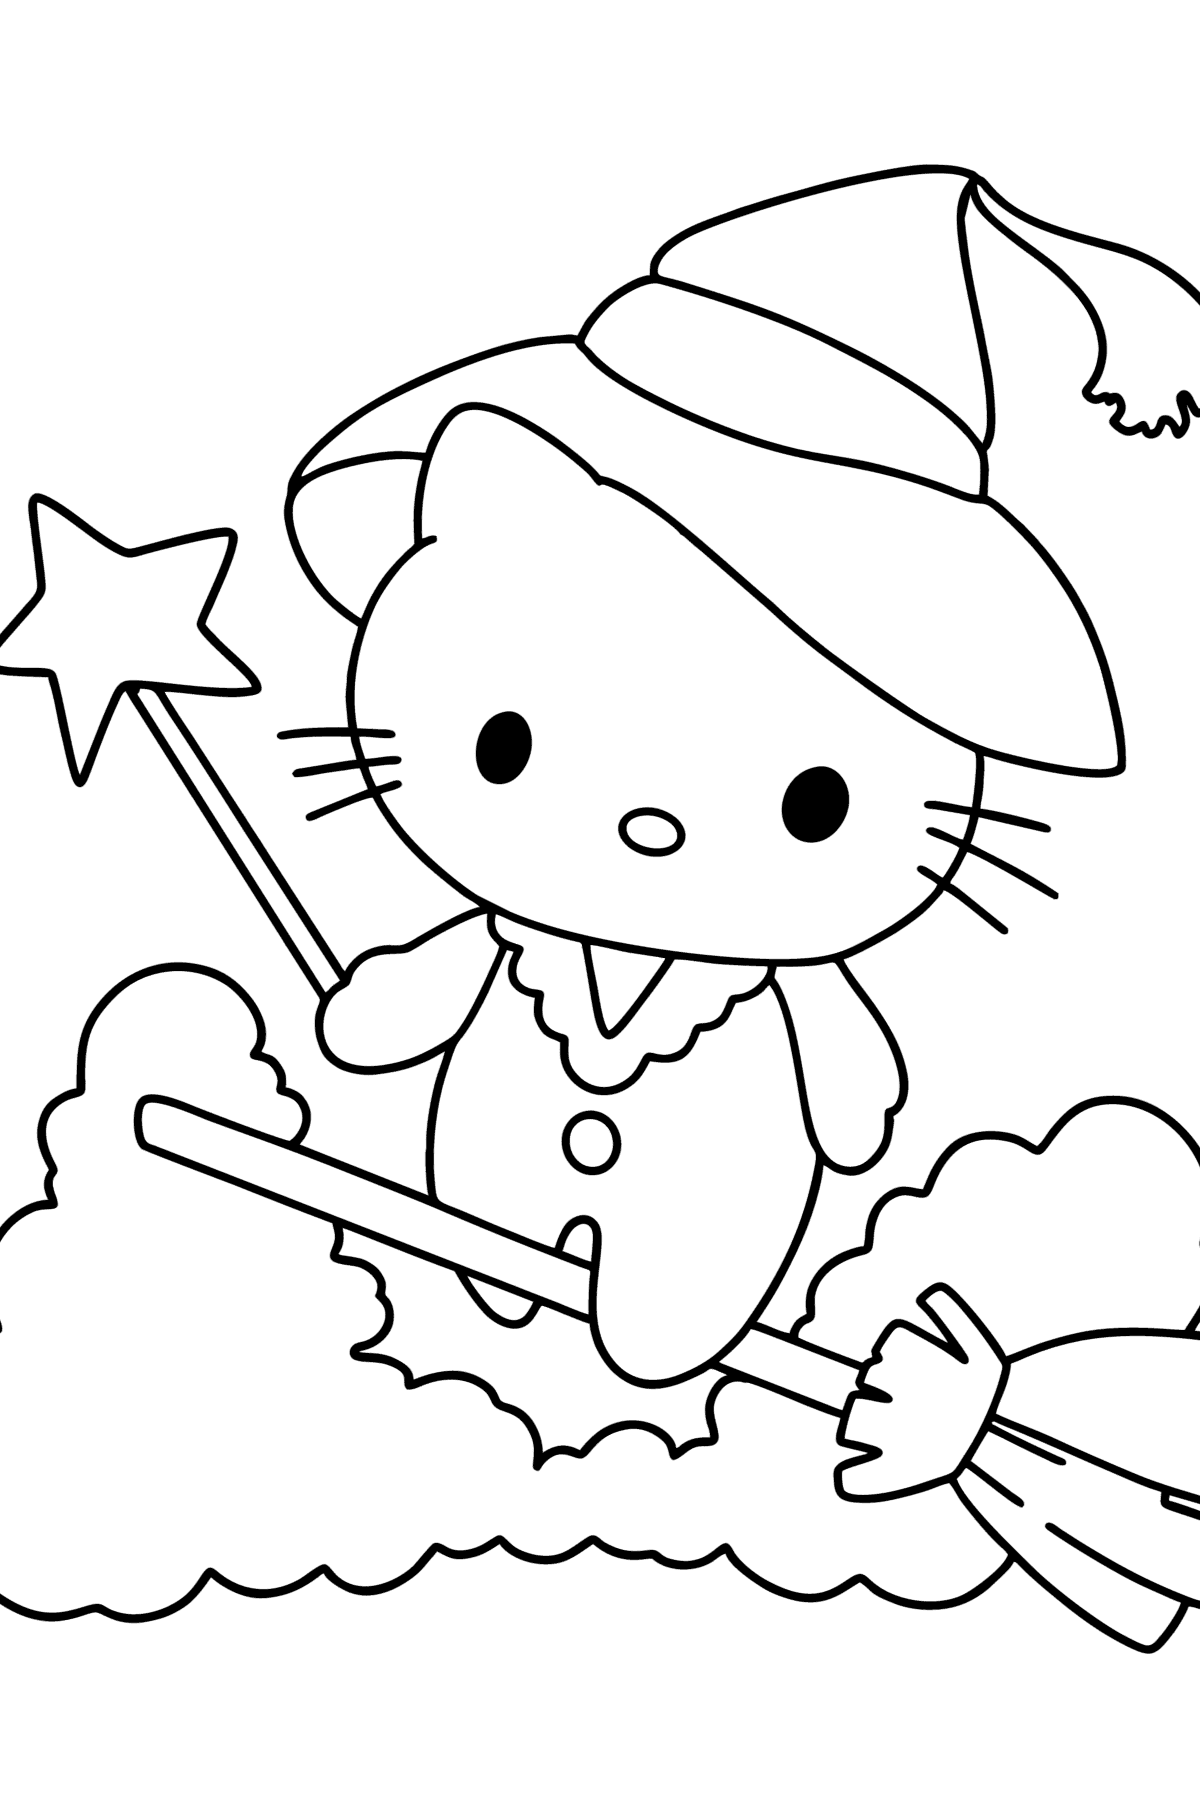 Tegning til fargelegging Hello Kitty halloween - Tegninger til fargelegging for barn